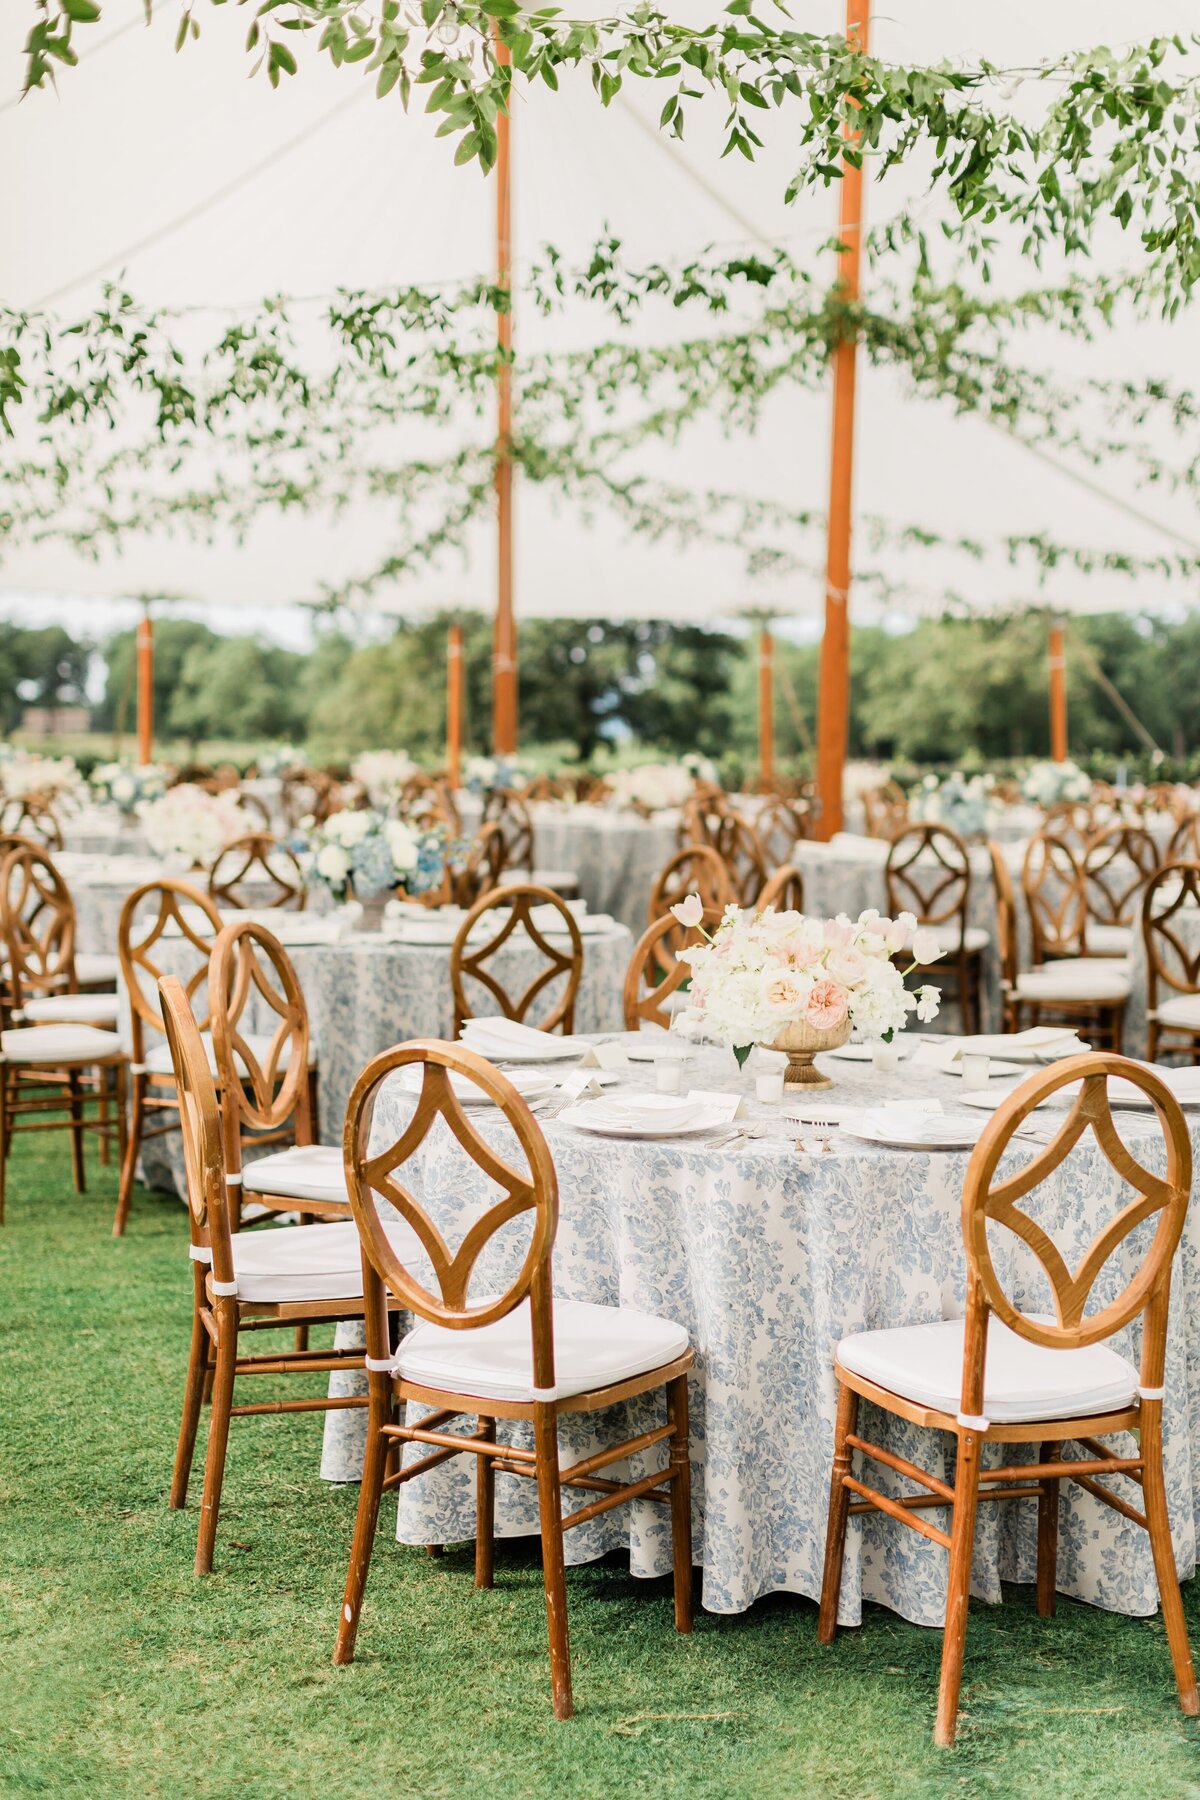 Summer wedding blue floral tablecloth garden party wedding